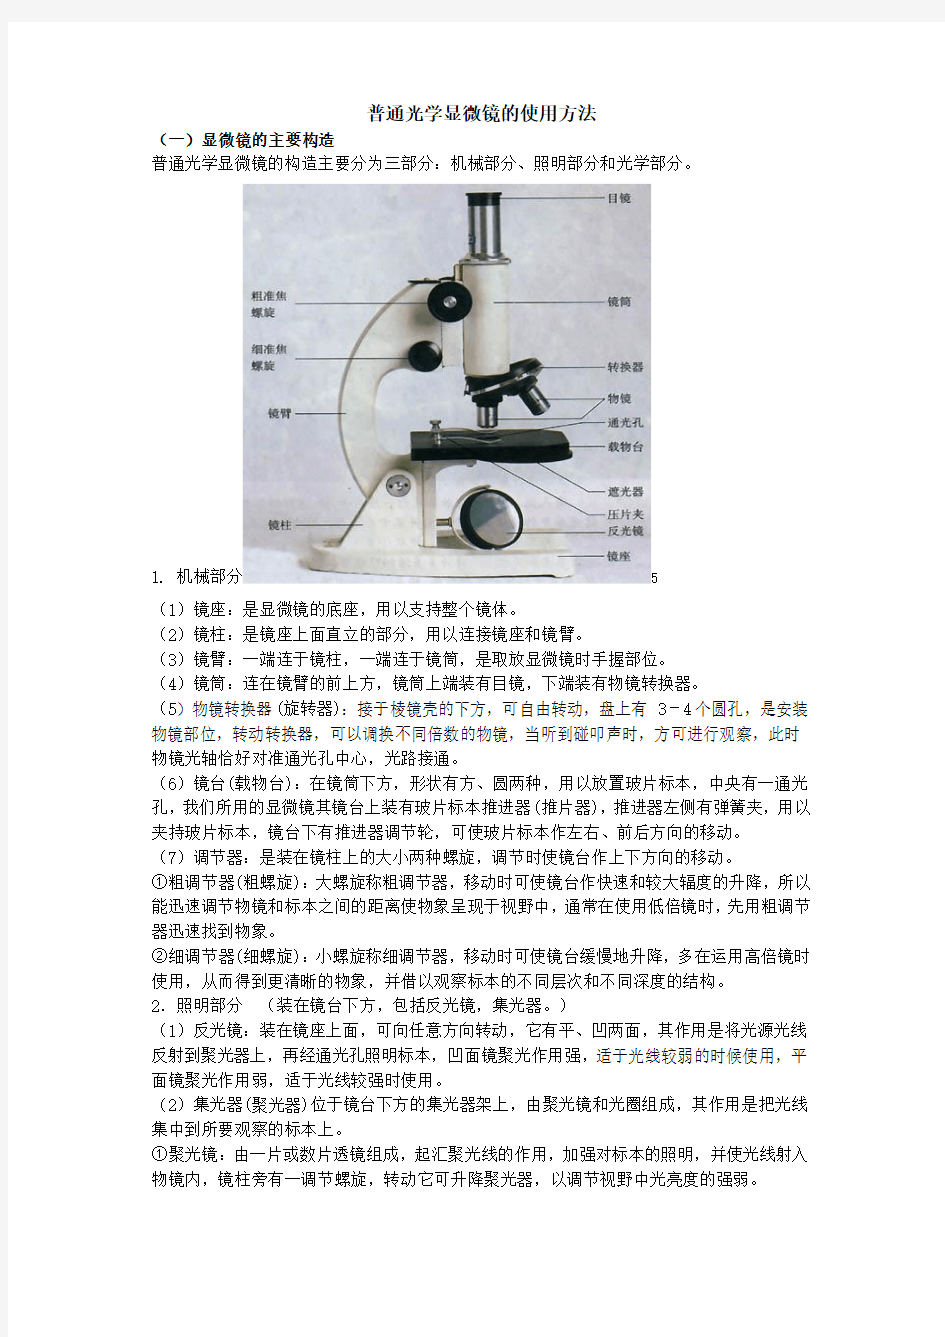 普通光学显微镜的使用方法